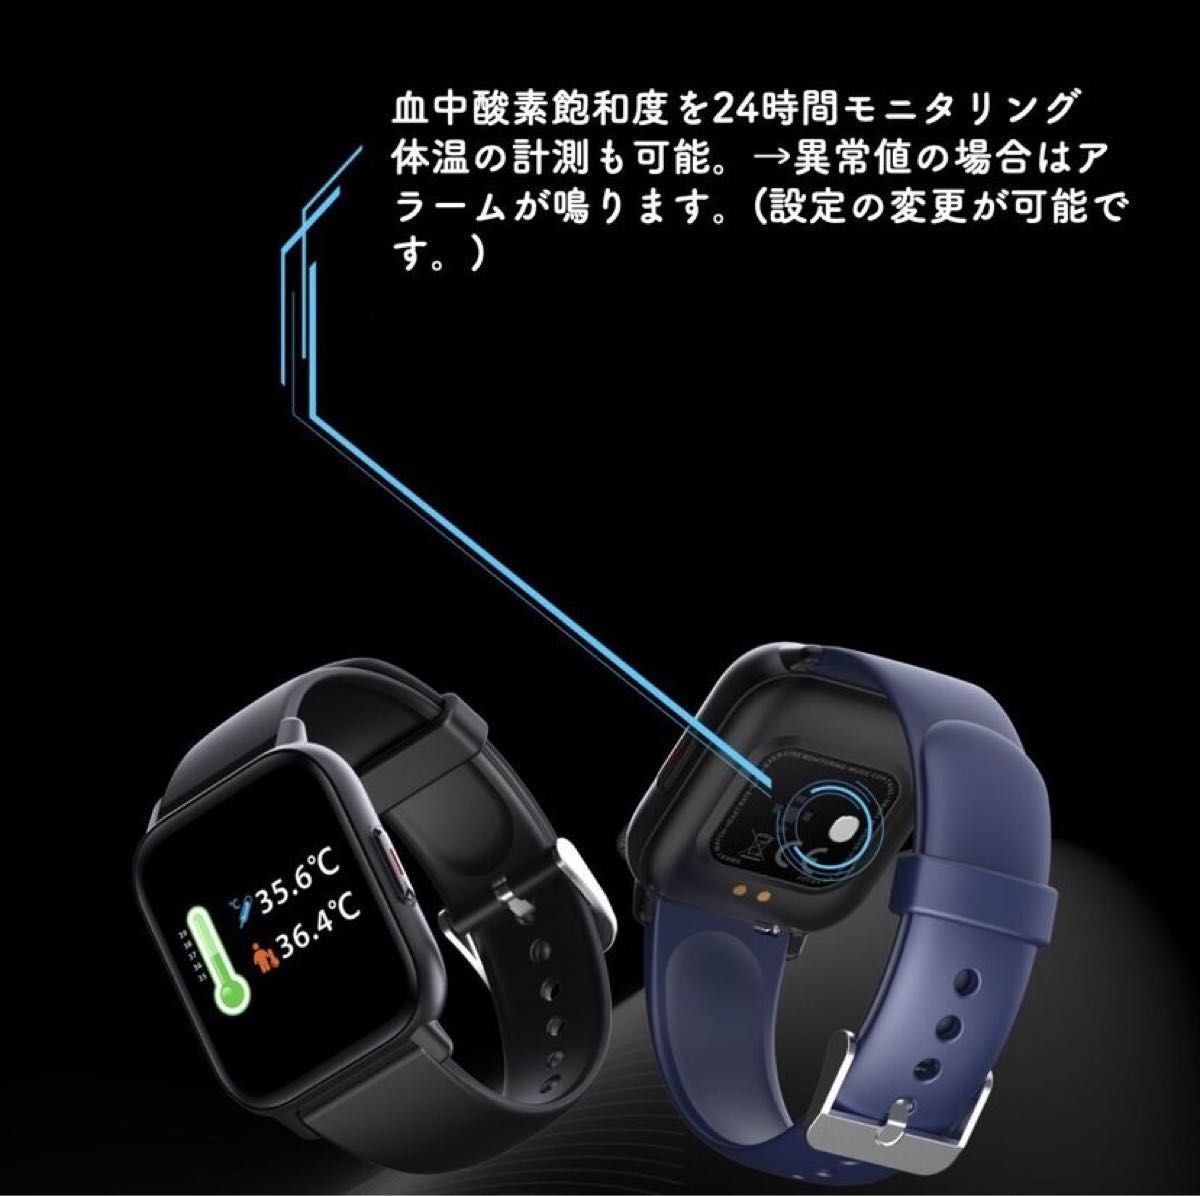 スマートウォッチ 1.69インチ 大画面 腕時計 Bluetooth5.0　ピンク